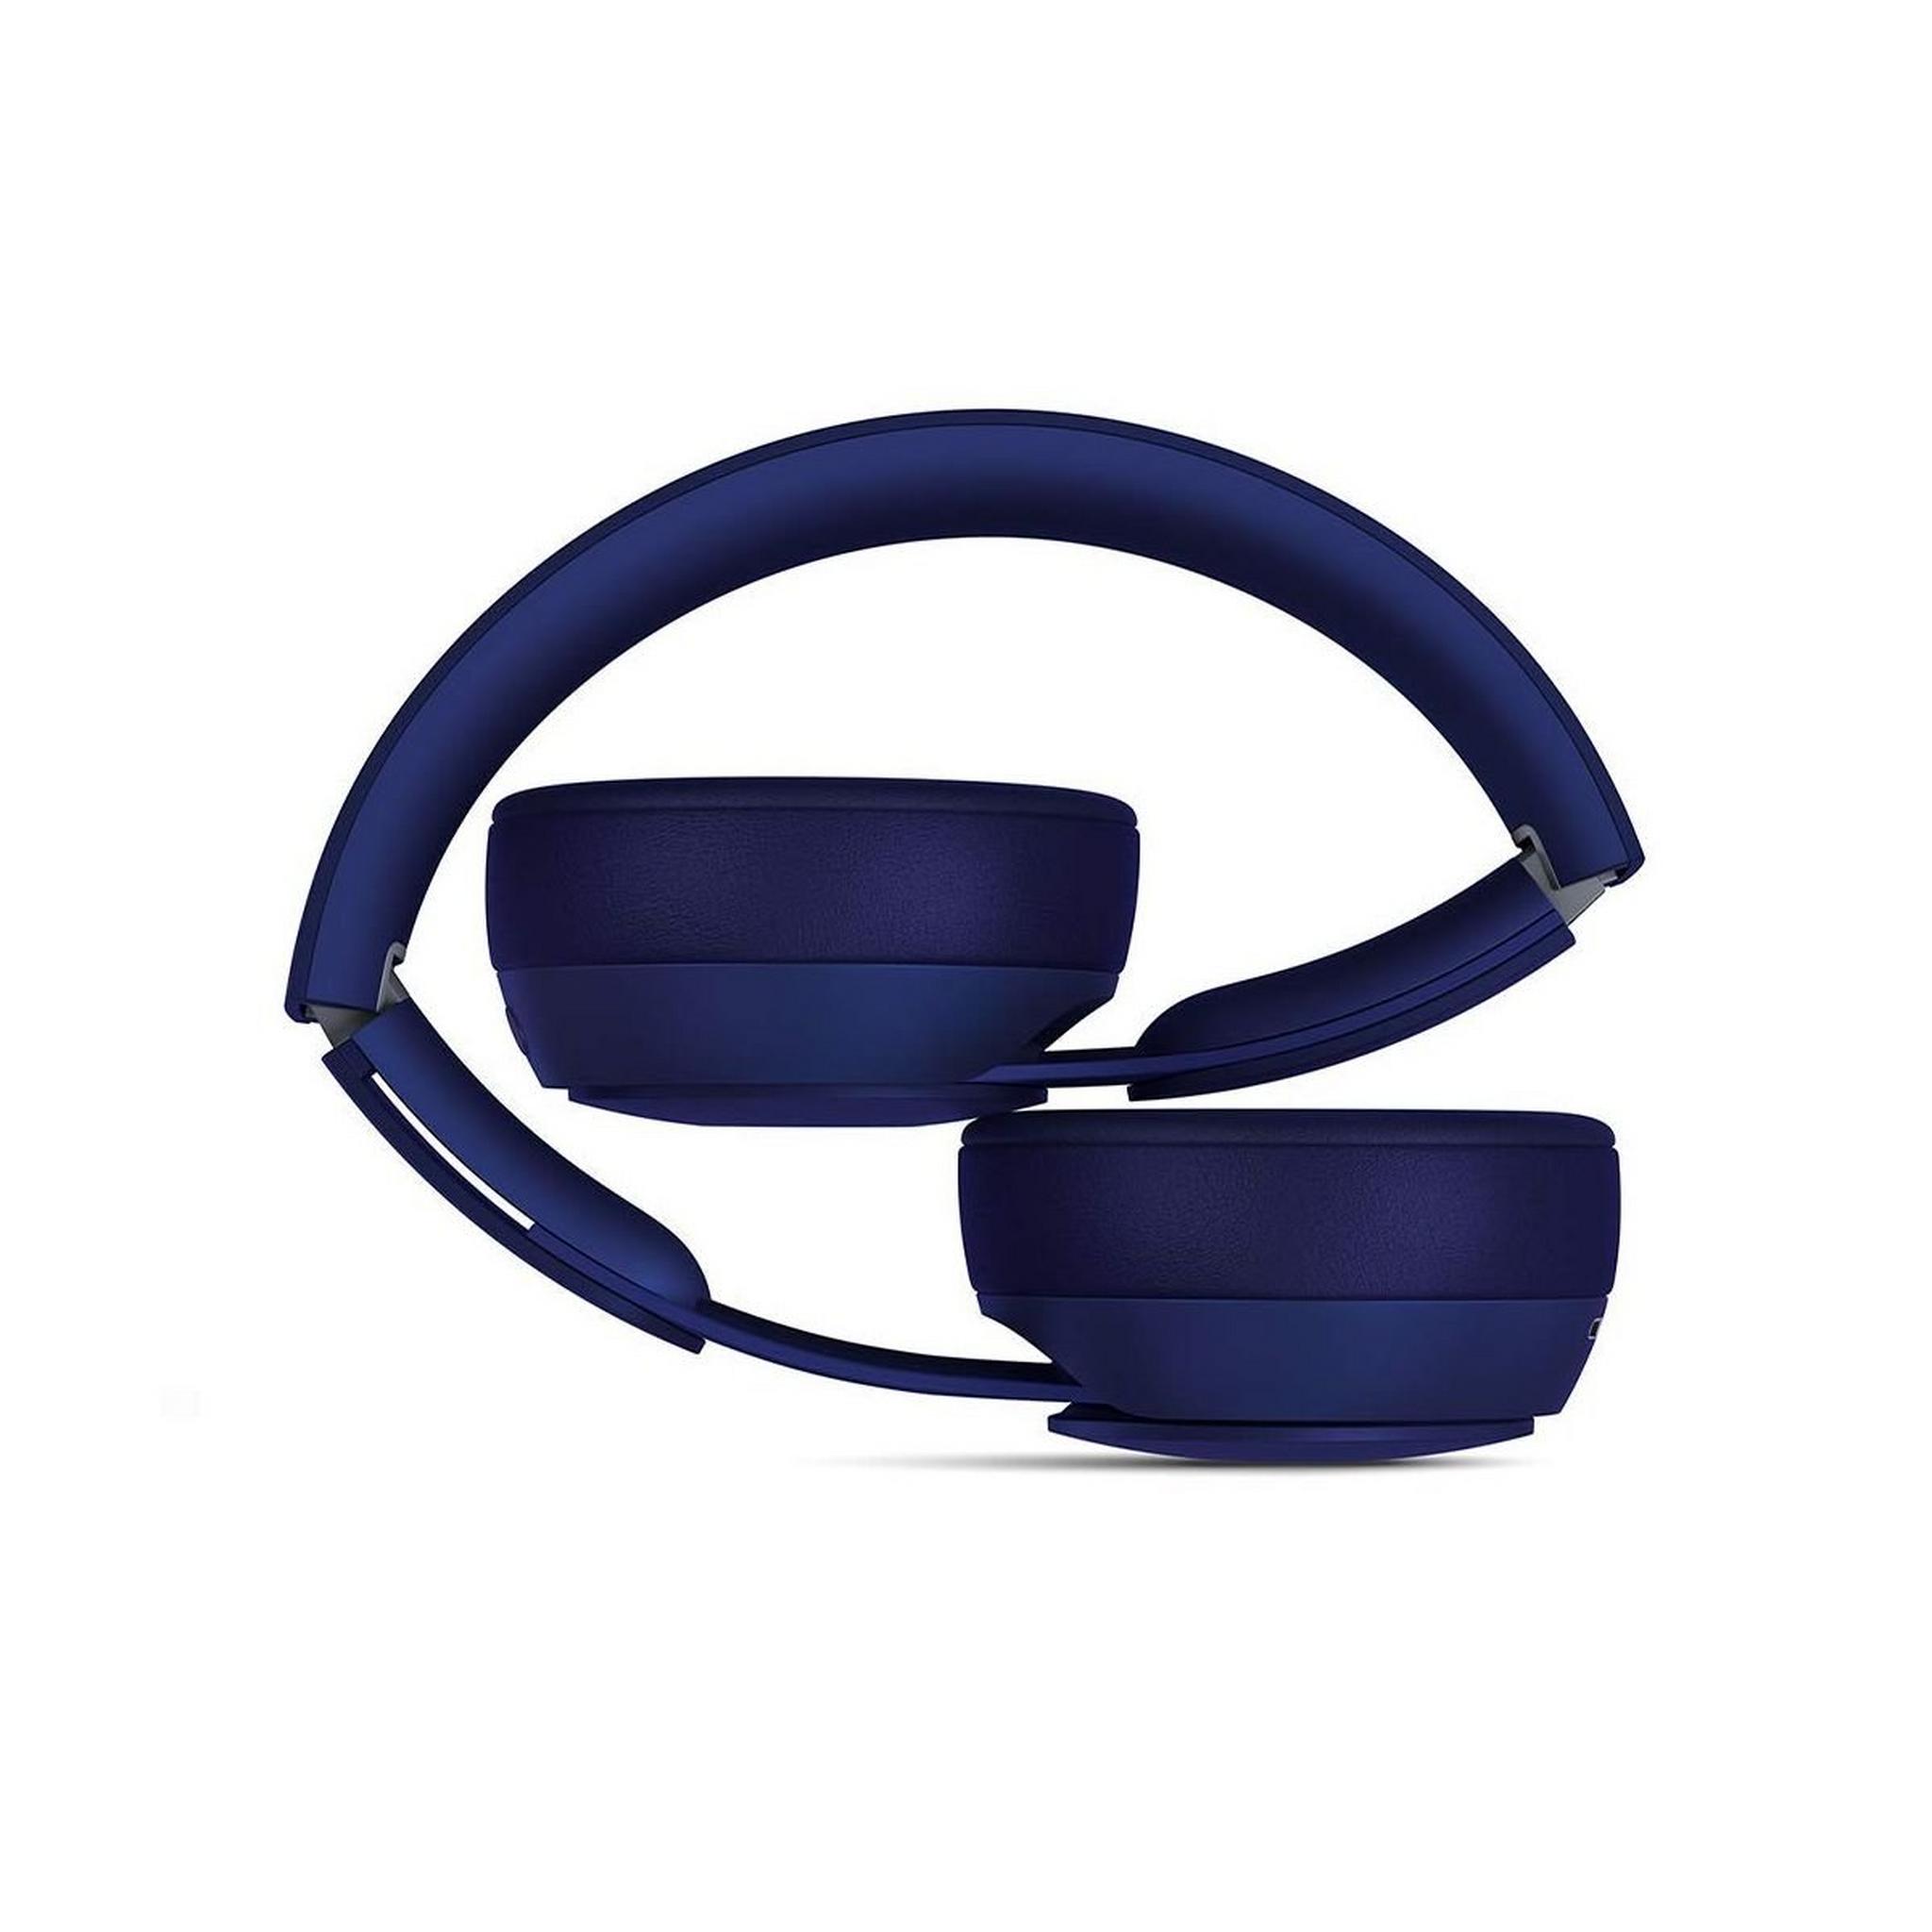 Beats by Dr. Dre Solo Pro Wireless Over-ear Headphone - Dark Blue